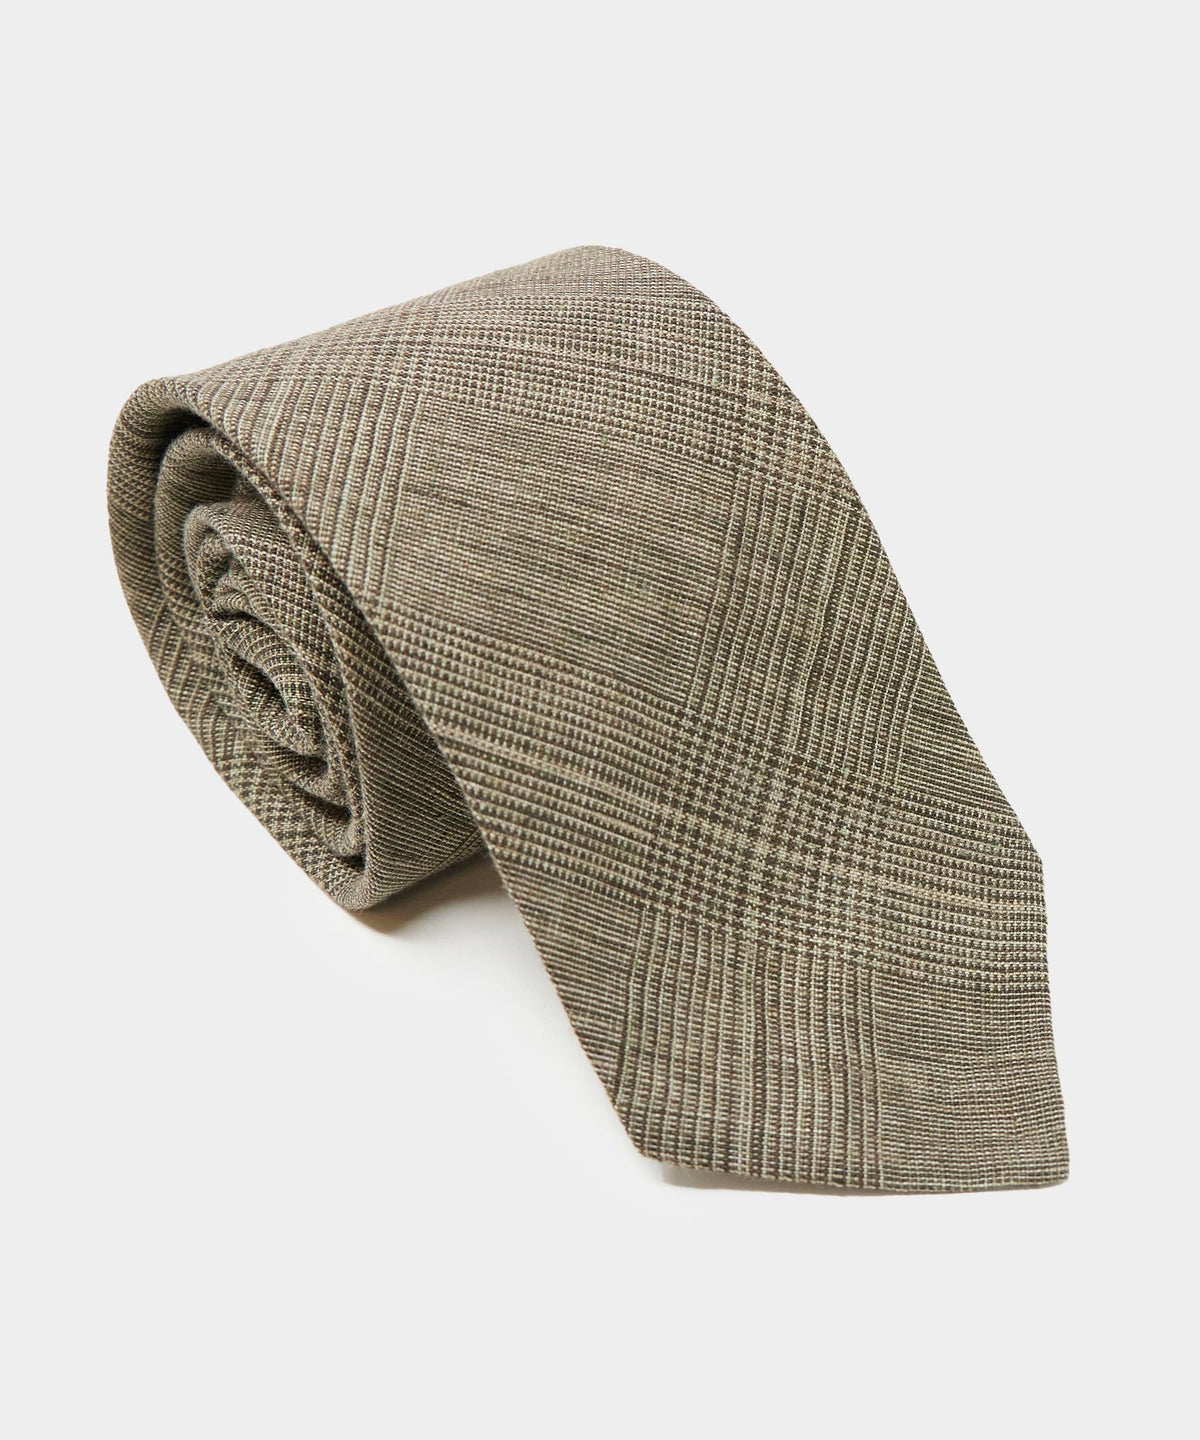 Linen Glenplaid Tie in Brown